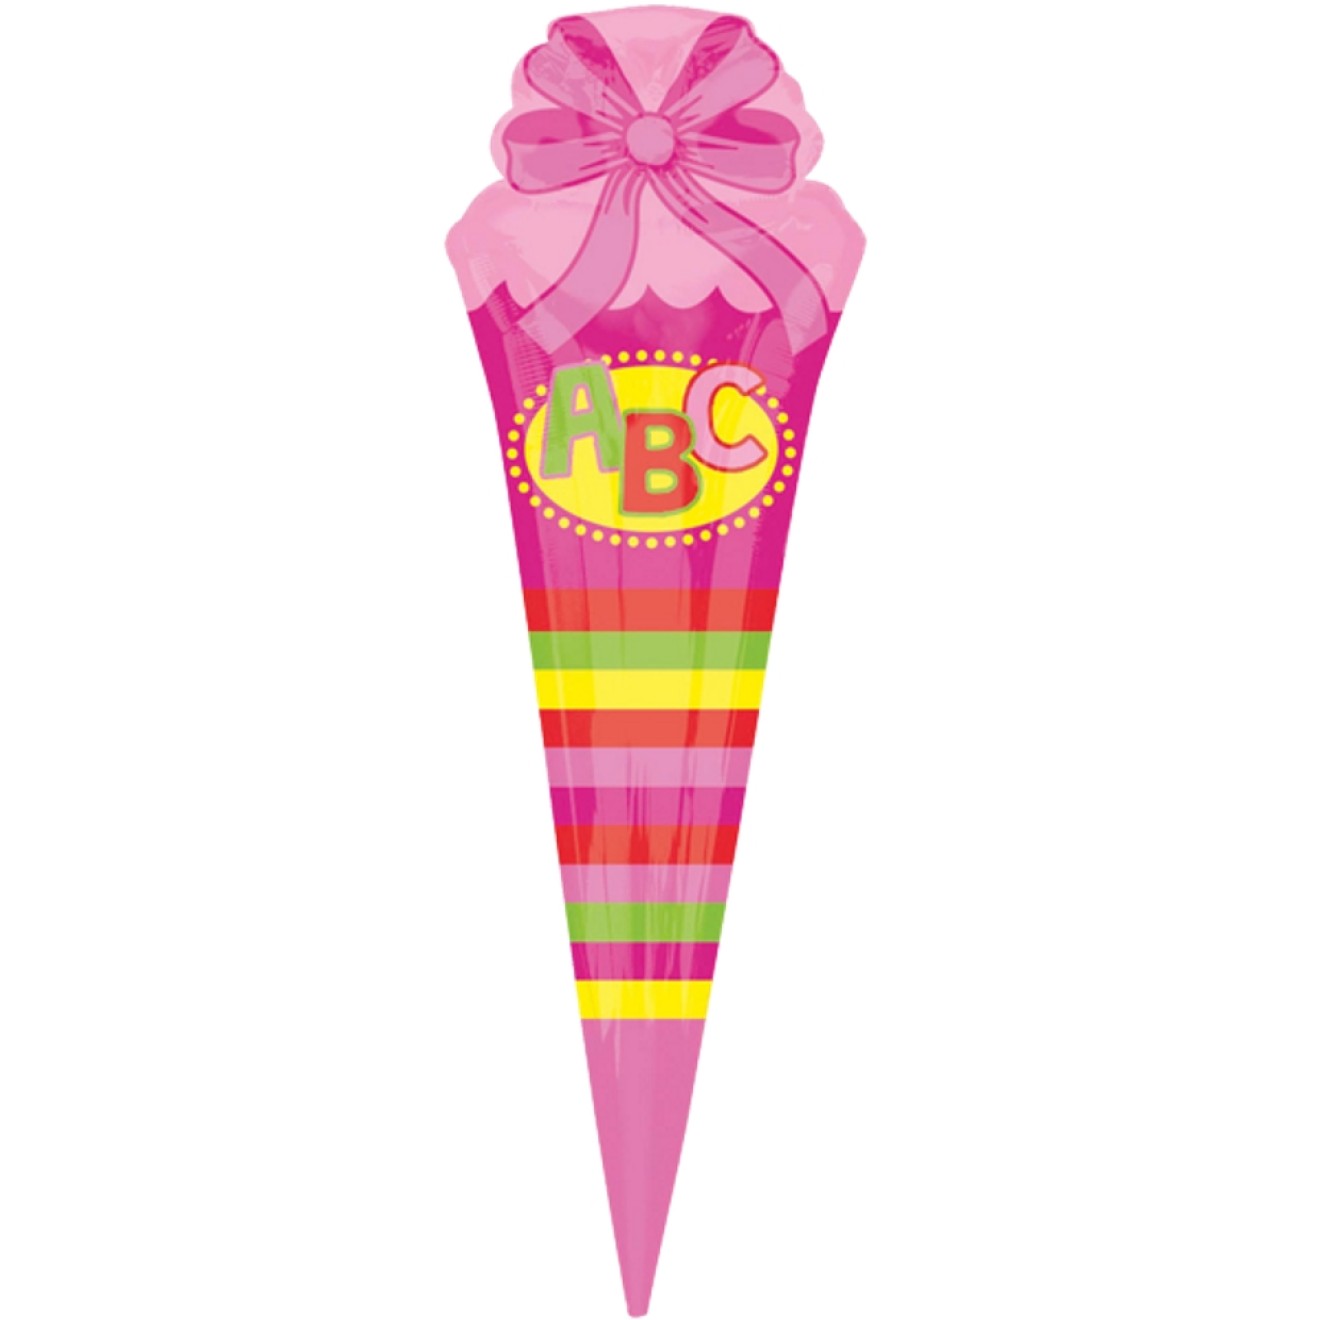 Folienballon Schulanfang - ABC Schultüte Pink 111 cm